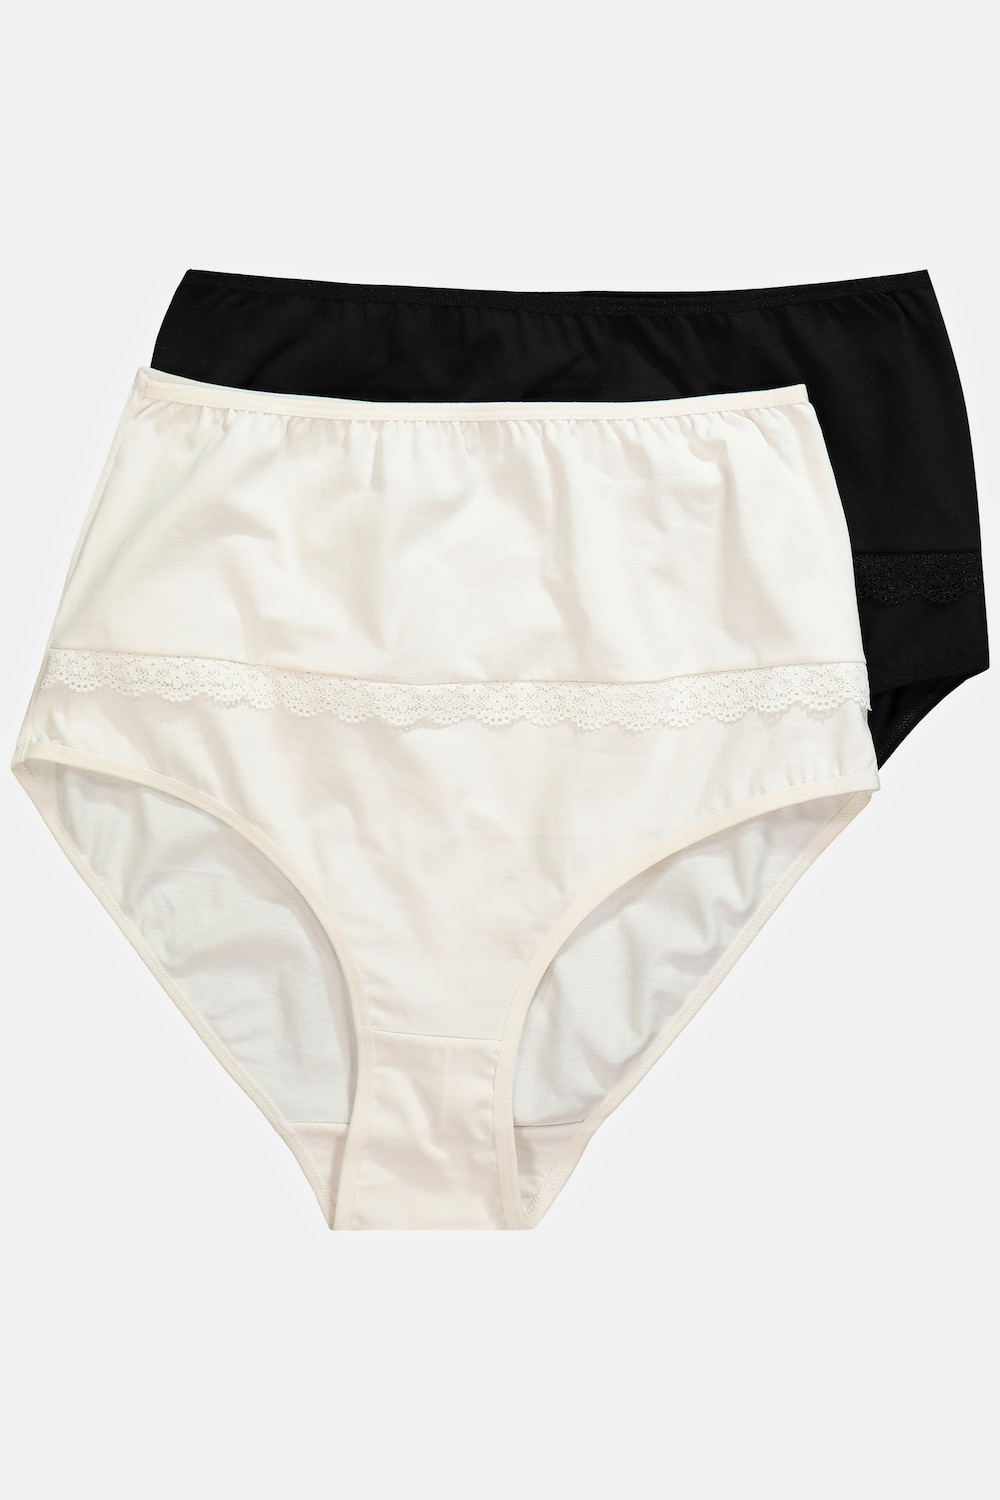 grandes tailles lot de 2 culottes maxi avec un ourlet en dentelle, femmes, blanc, taille: 52/54, coton/fibres synthétiques/élasthanne, ulla popken